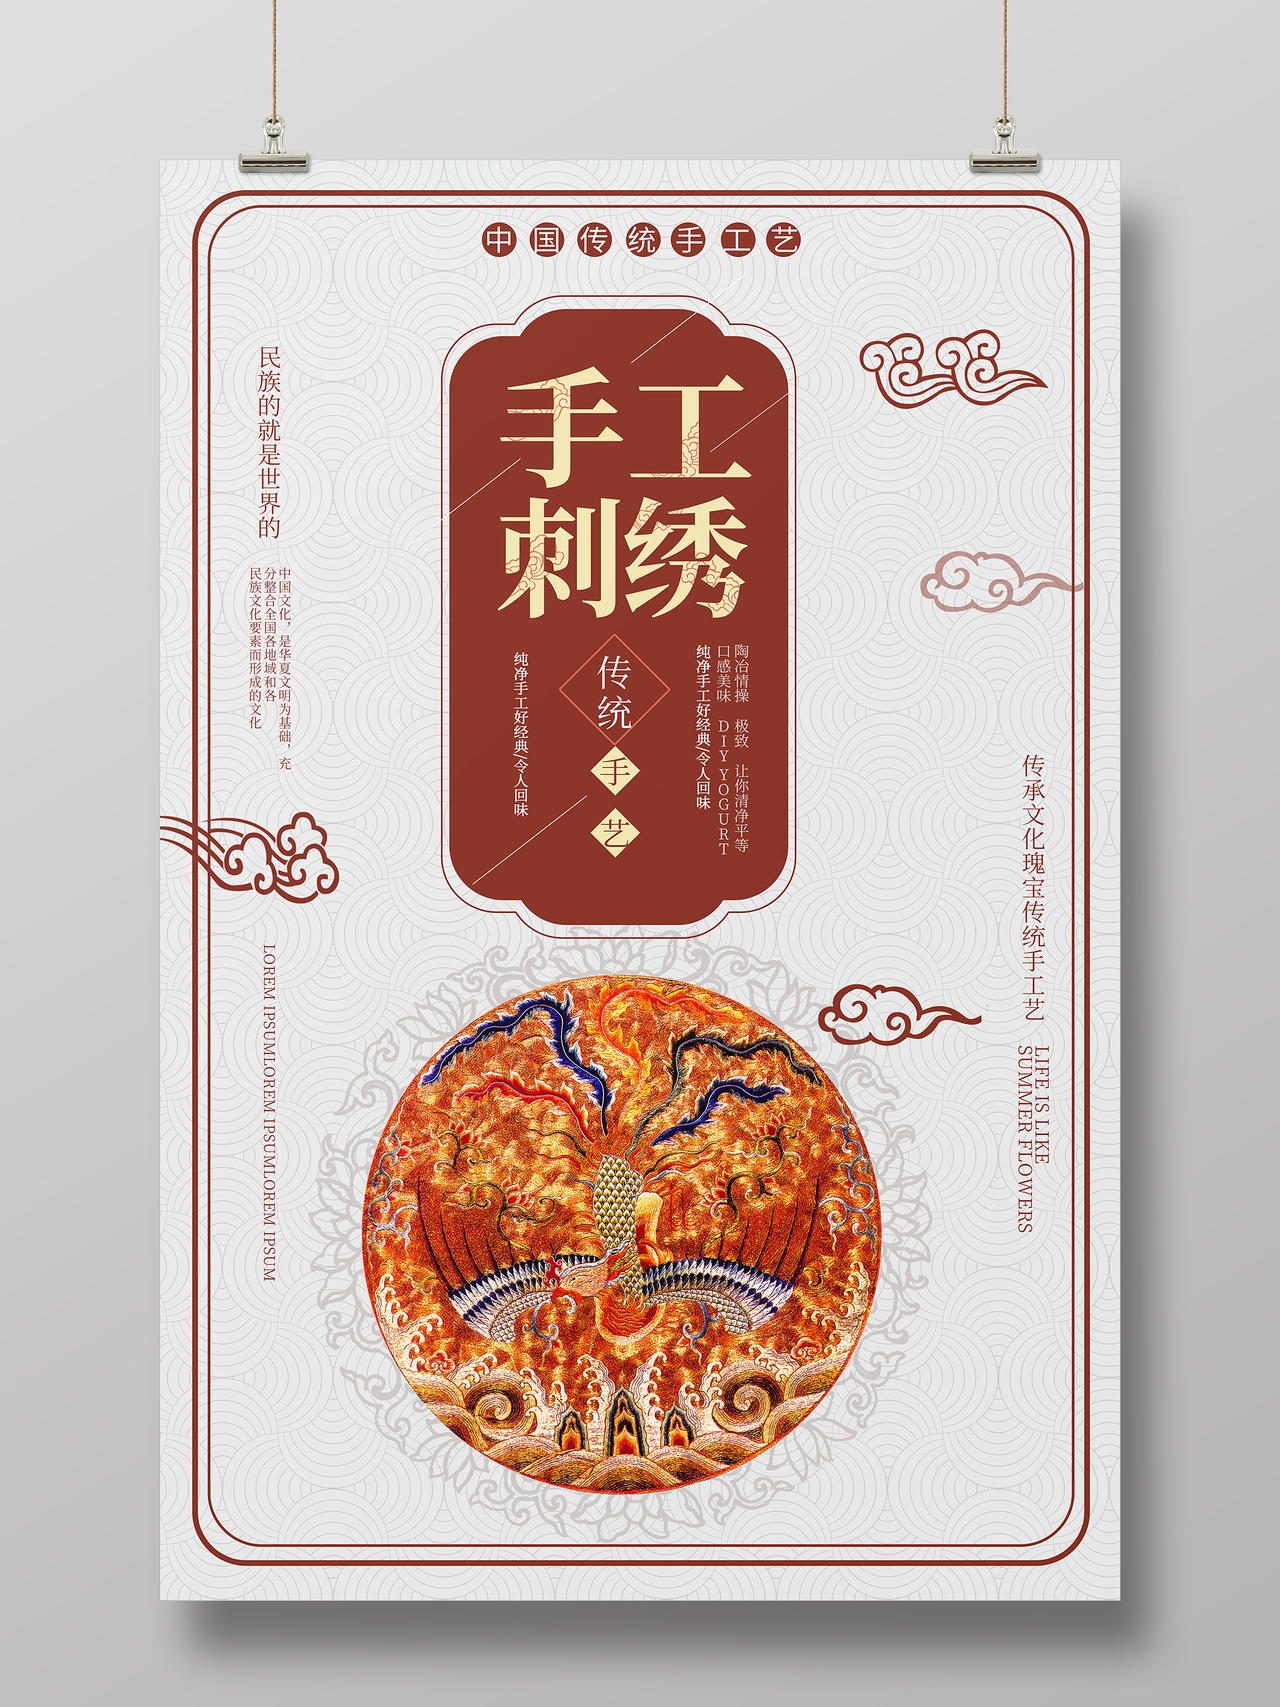 褐色中国风手工刺绣中国传统手工艺宣传海报设计